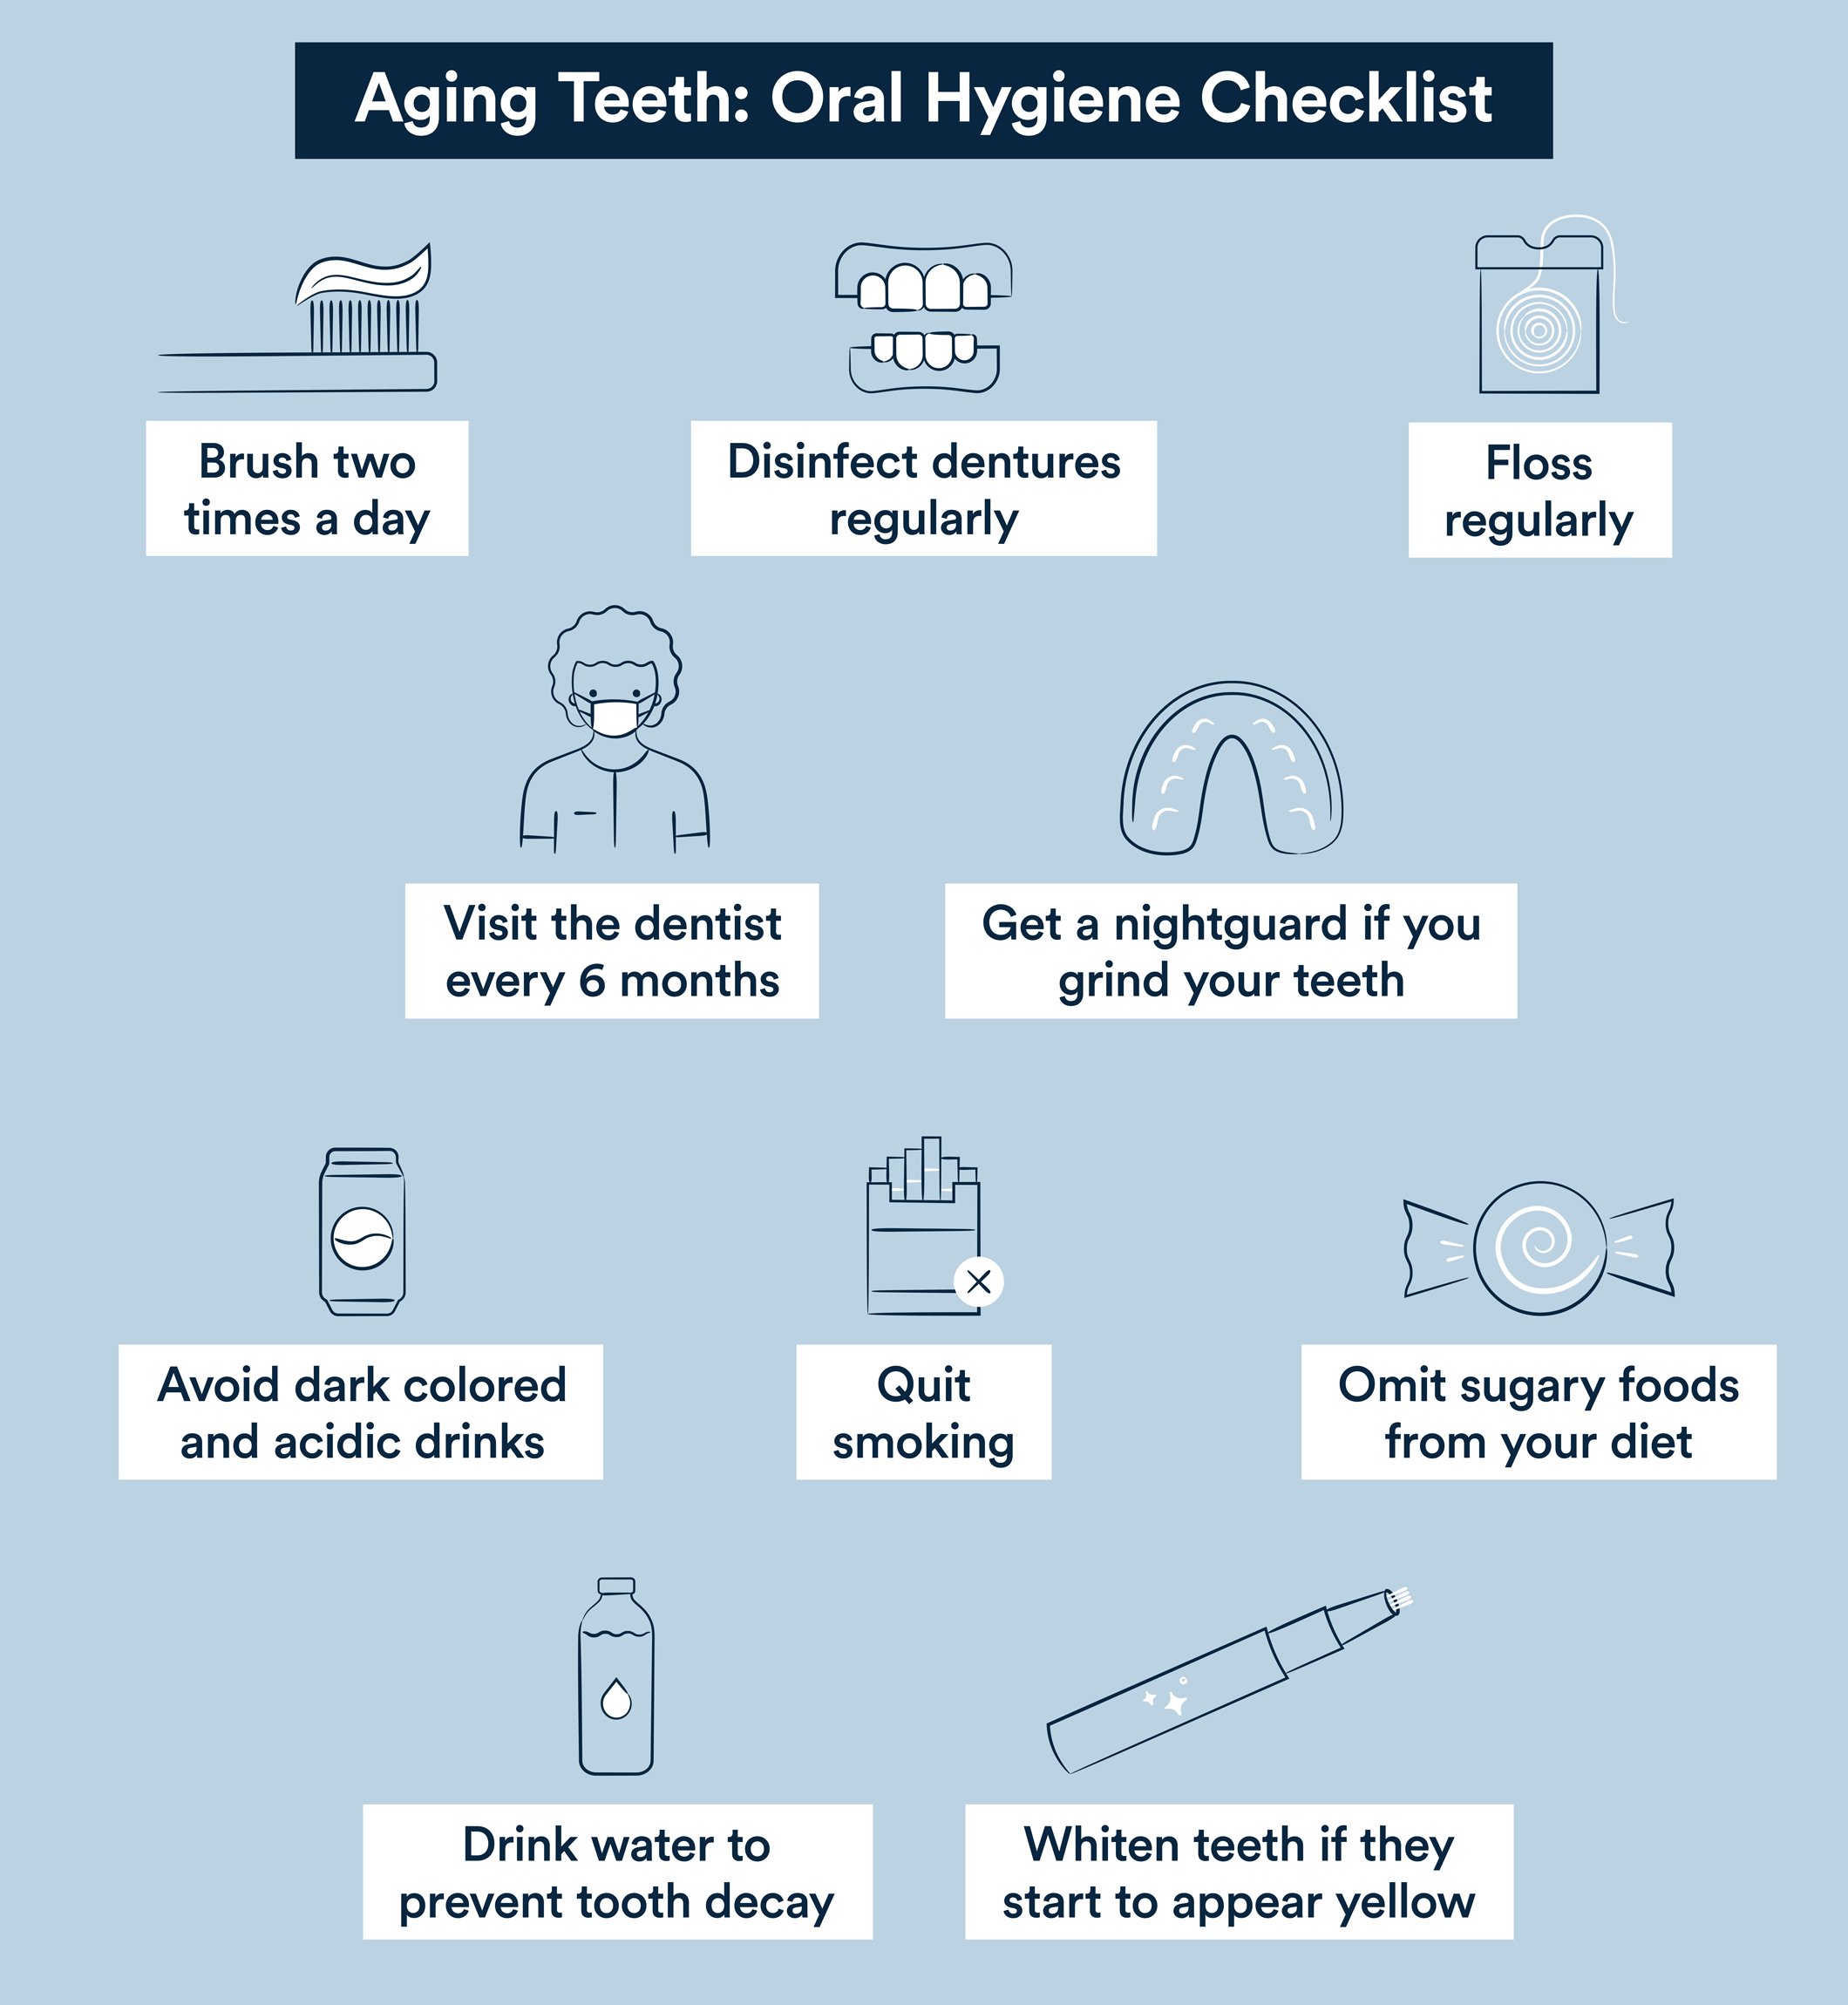 aging teeth oral hygiene checklist